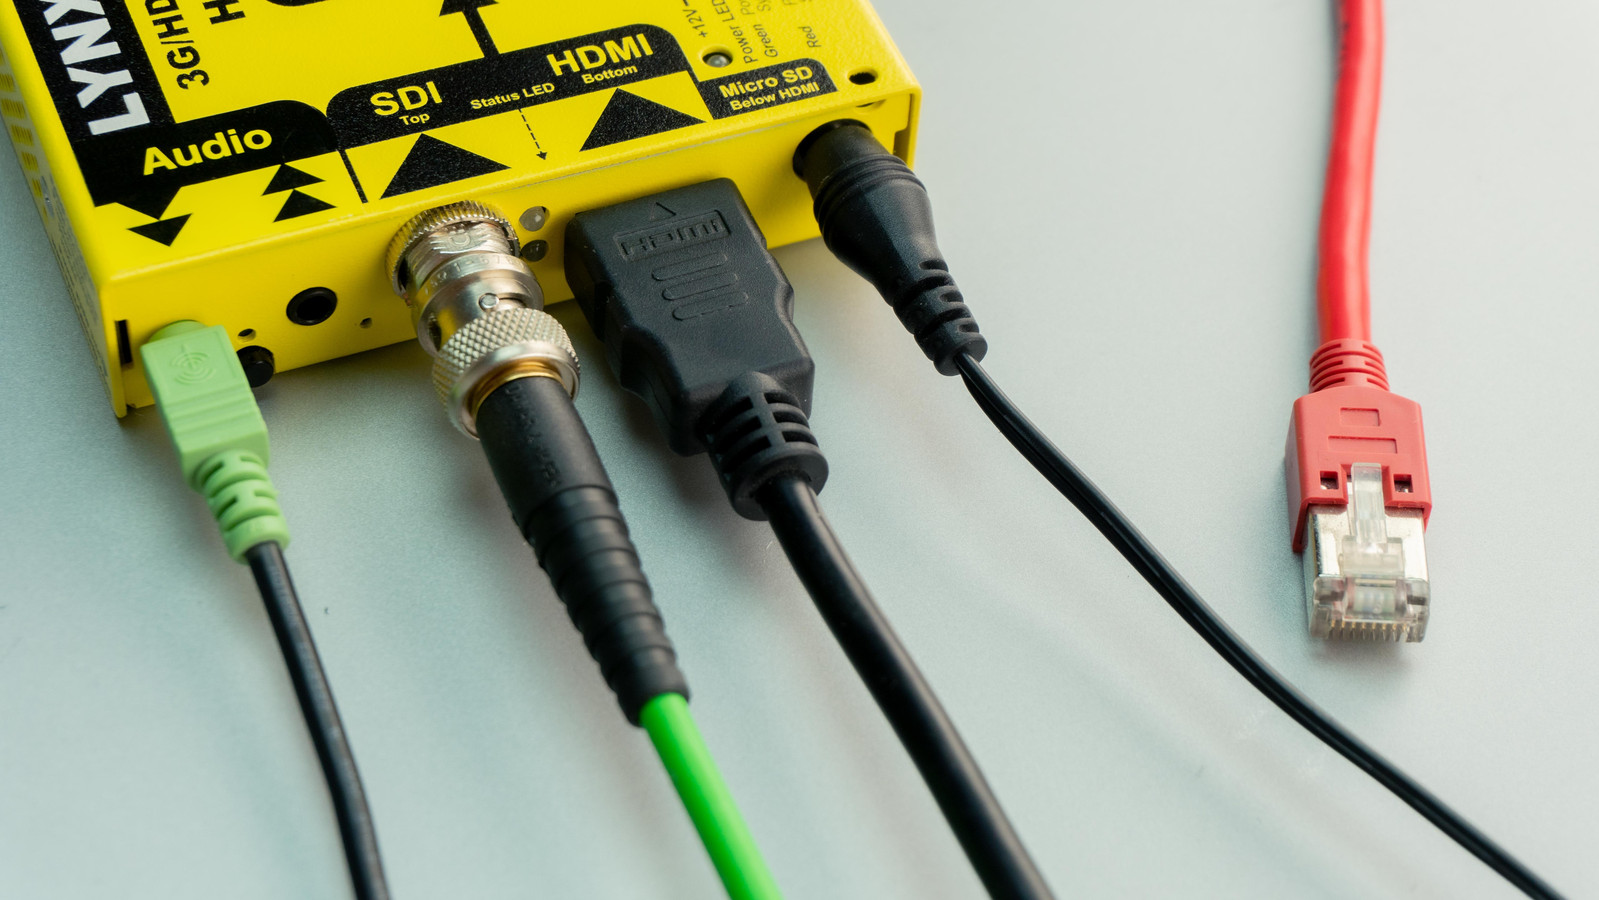 zout binnenkomst contrast Is een dure kabel echt beter dan een goedkope? Elektronica-expert legt uit  hoe je de beste keuze maakt | Foto | hln.be